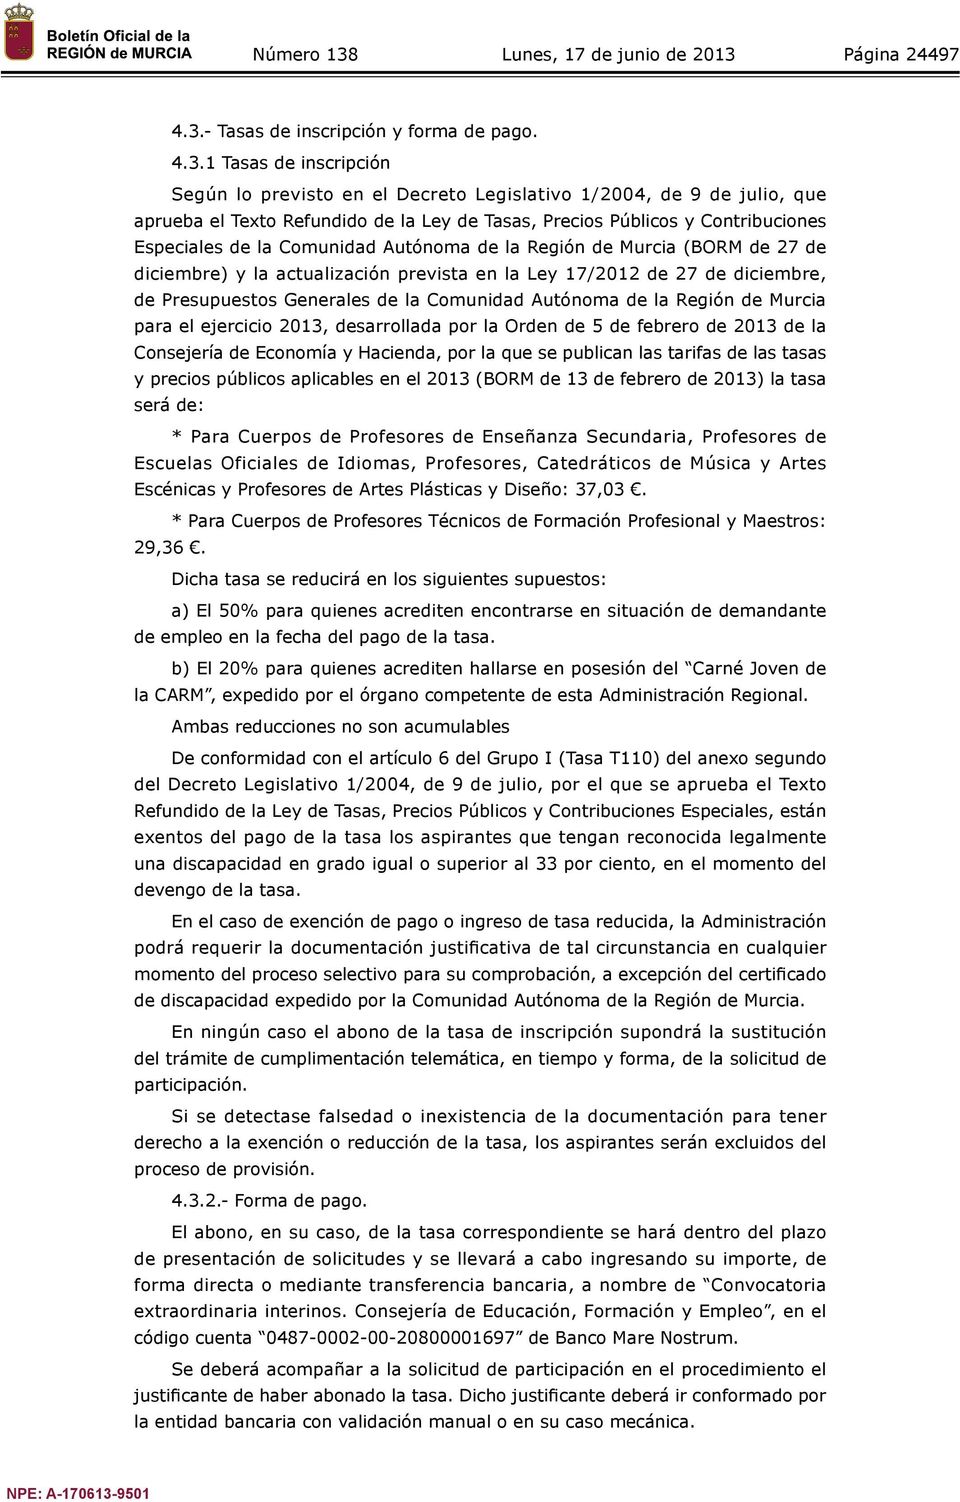 1 Tasas de inscripción Según lo previsto en el Decreto Legislativo 1/2004, de 9 de julio, que aprueba el Texto Refundido de la Ley de Tasas, Precios Públicos y Contribuciones Especiales de la